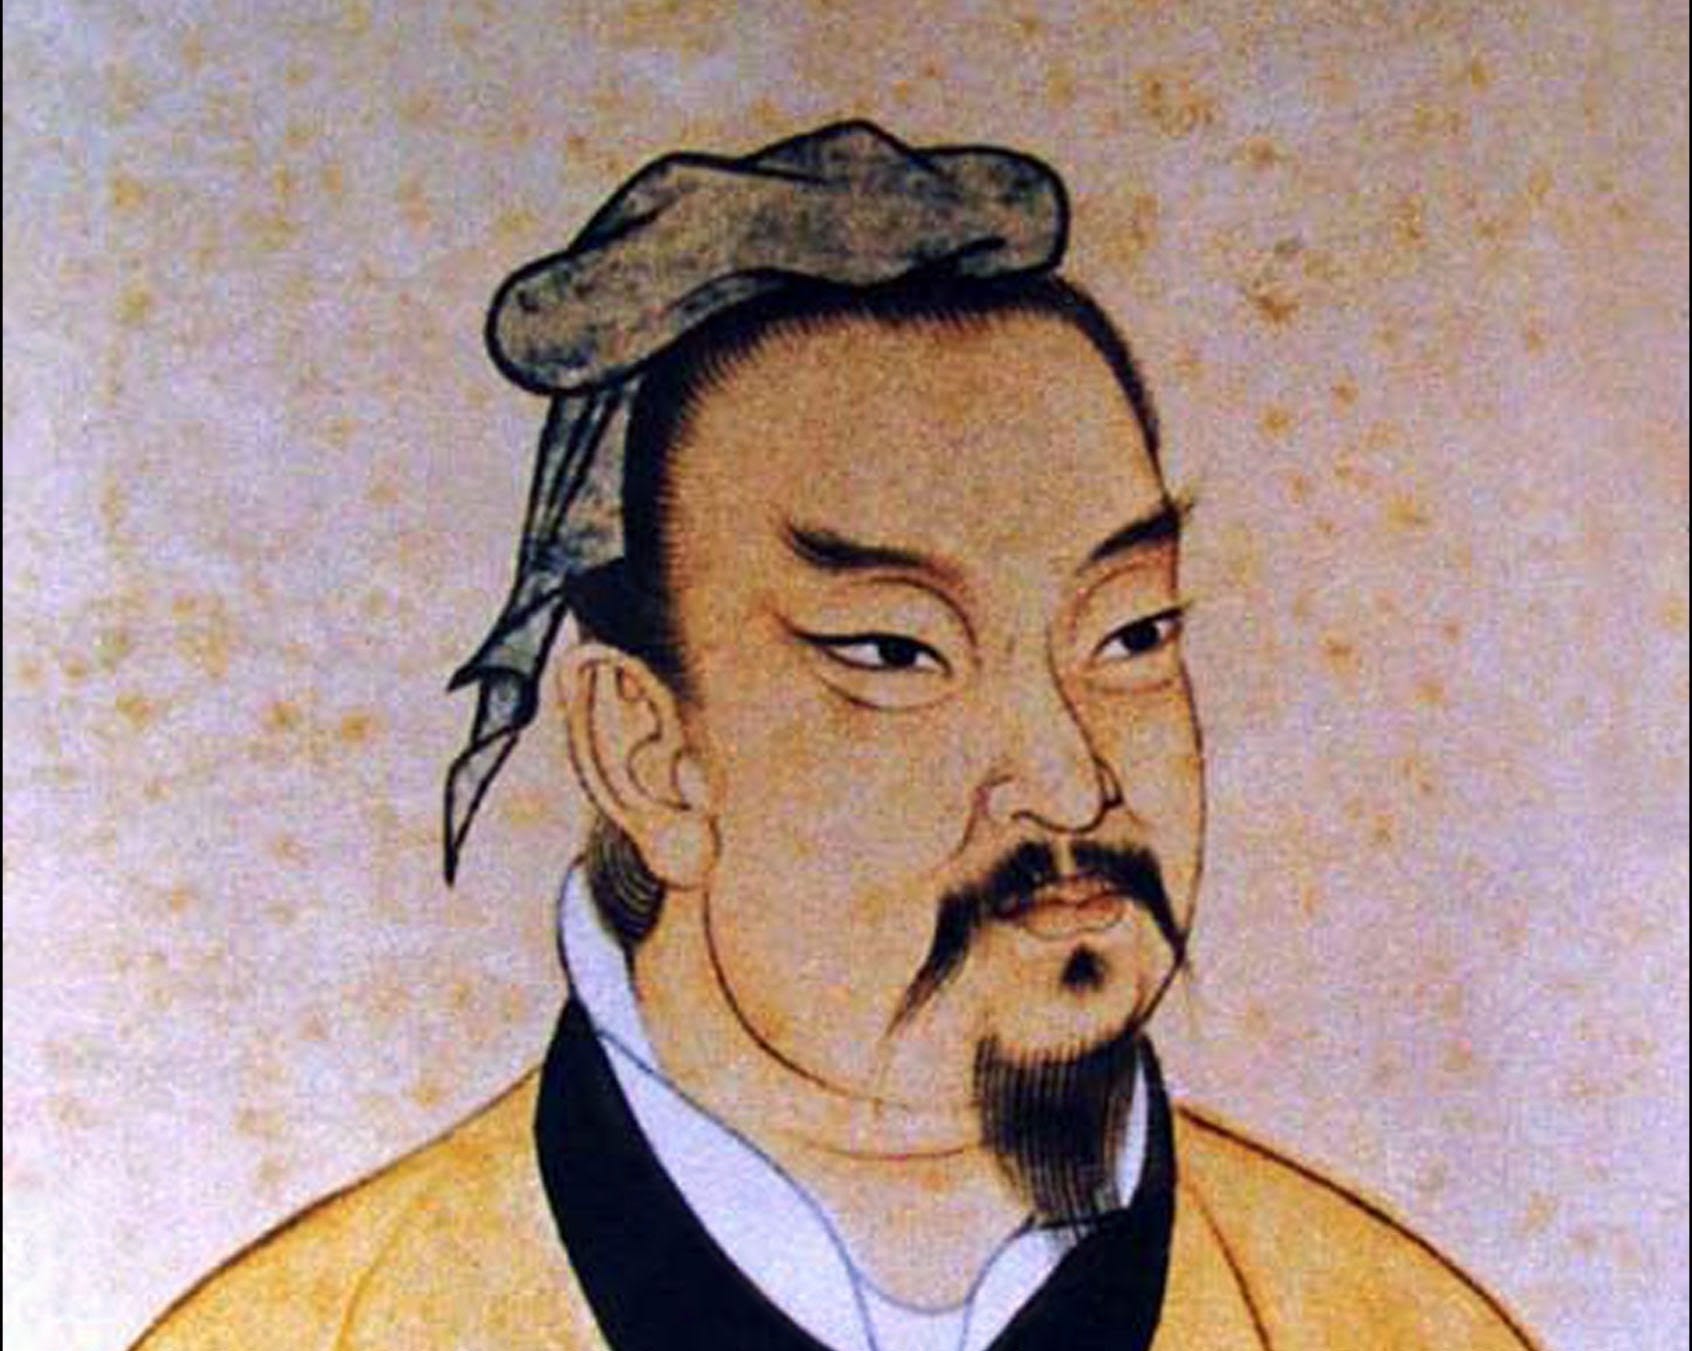 Sun Tzu foi um general, estrategista e filósofo chinês e principal nome relacionado a escola militar de filosofia chinesa. É mais conhecido por seu tratado militar, A Arte da Guerra, composto por 13 capítulos de estratégias militares